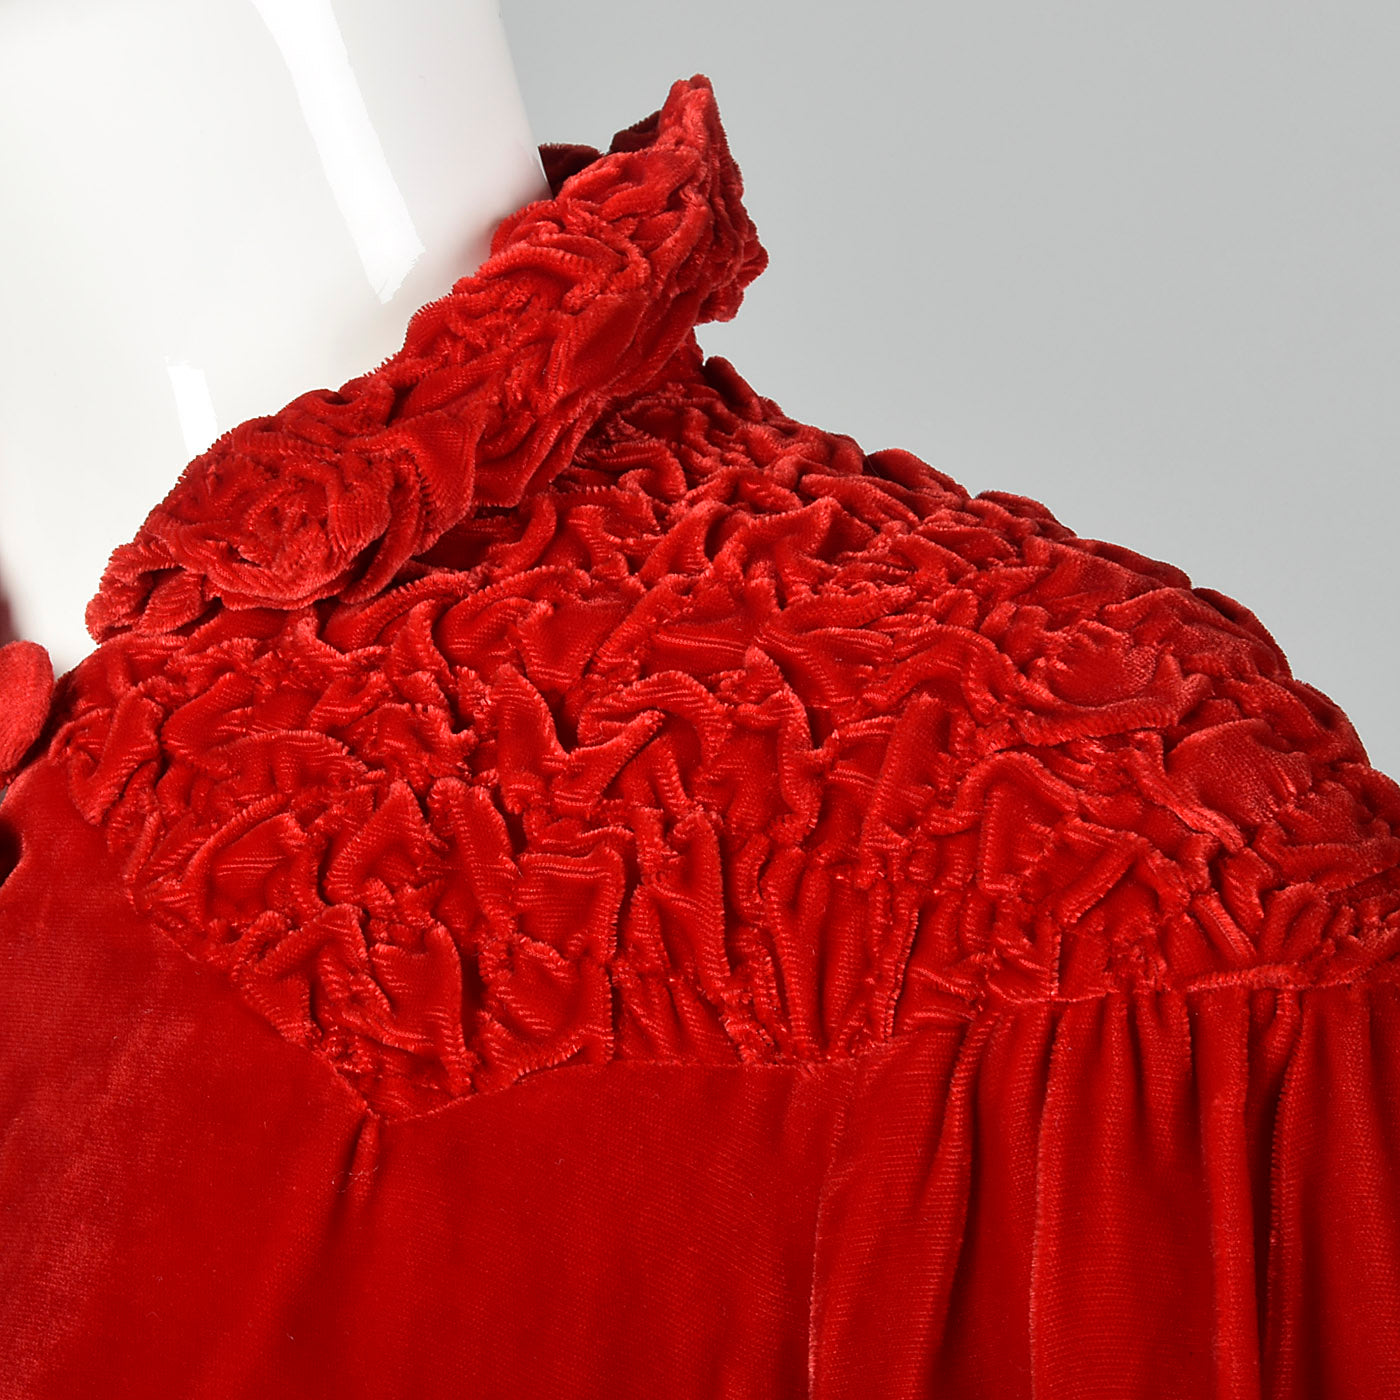 1940s Lightweight Red Velvet Swing Coat